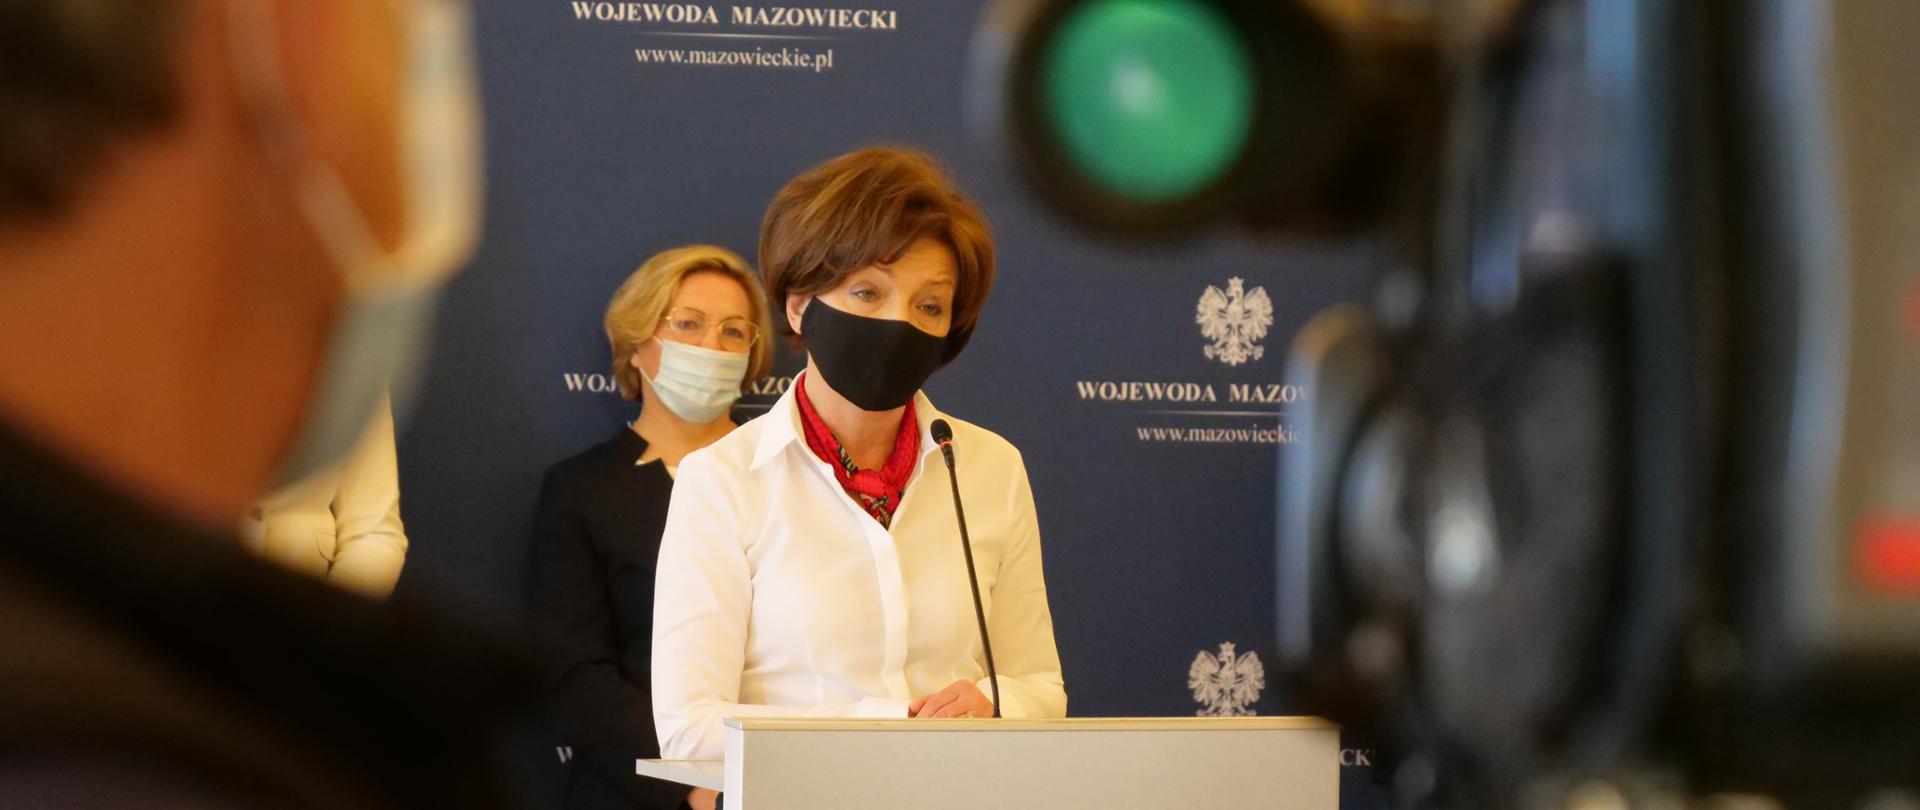 Briefing w Mazowieckim urzędzie Wojewódzkim na temat tarczy antykryzysowej